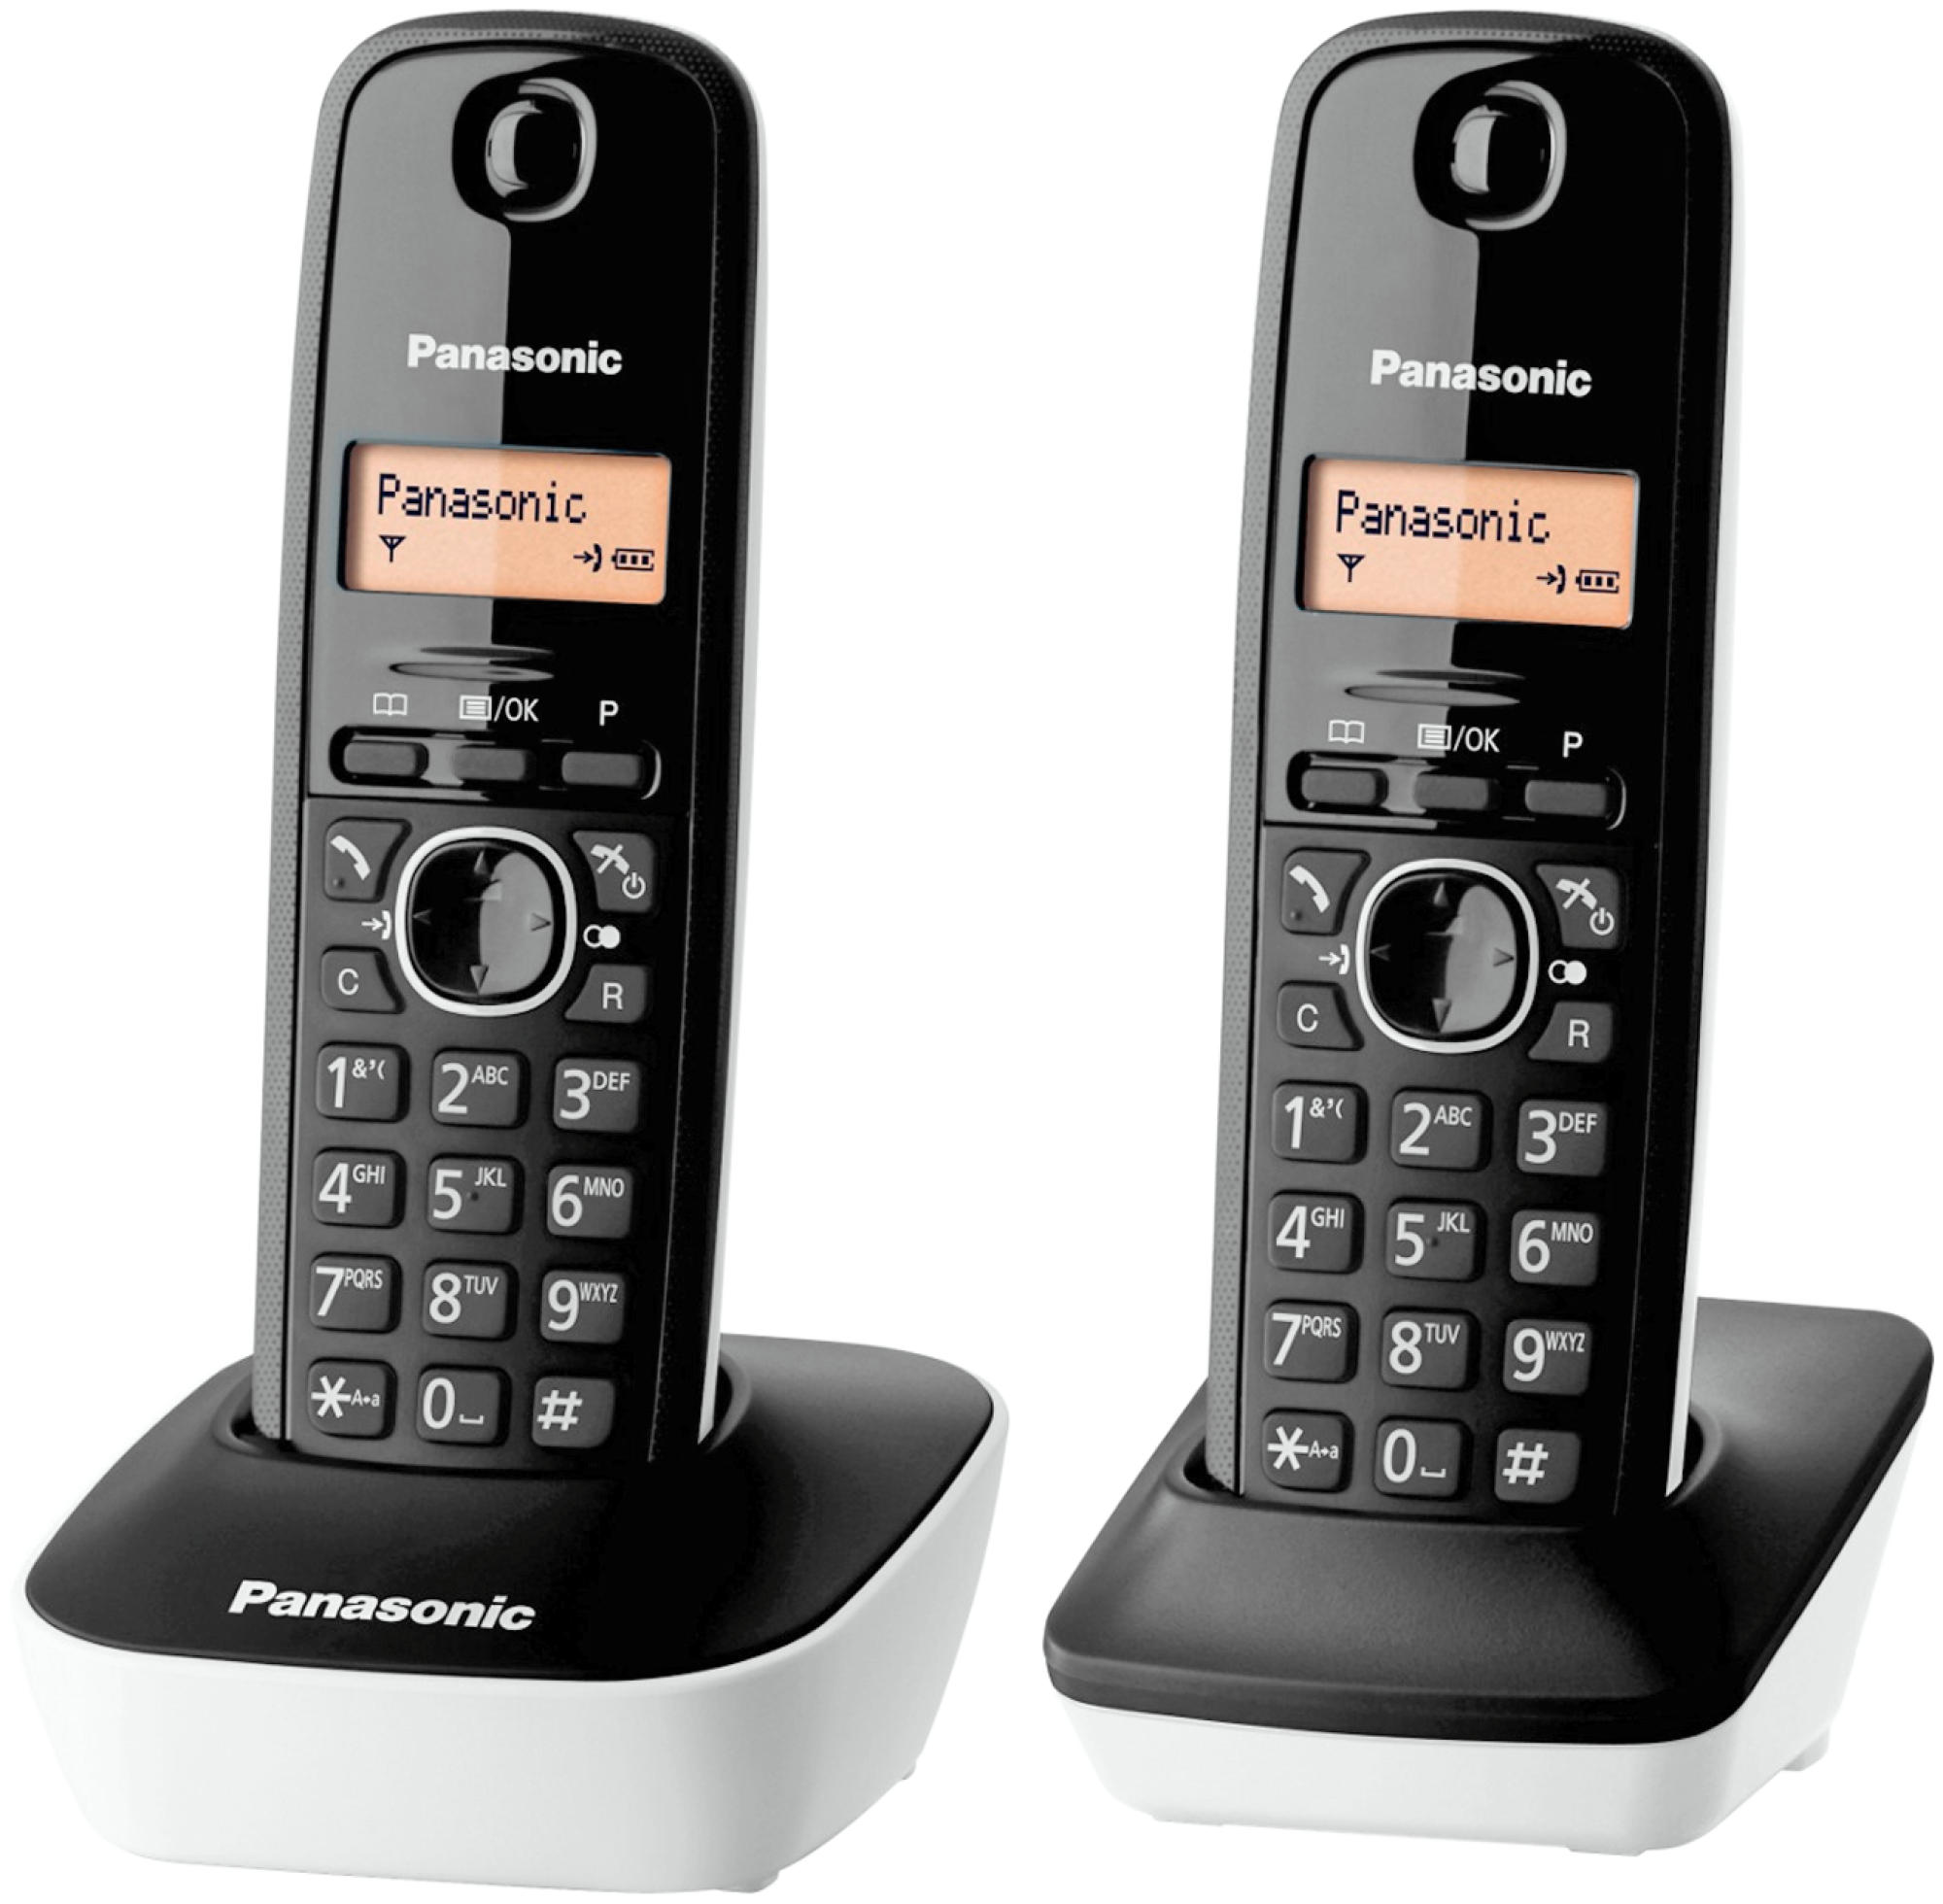 Fijo Panasonic Kxtg1612 sp1 blanconegro dect kxtg1612sp1 duo y negro pack 2 1612 lcd identificador llamadas intercomunicación tecla navegación alarma reloj color 15 1 kxtg1612bnsp1